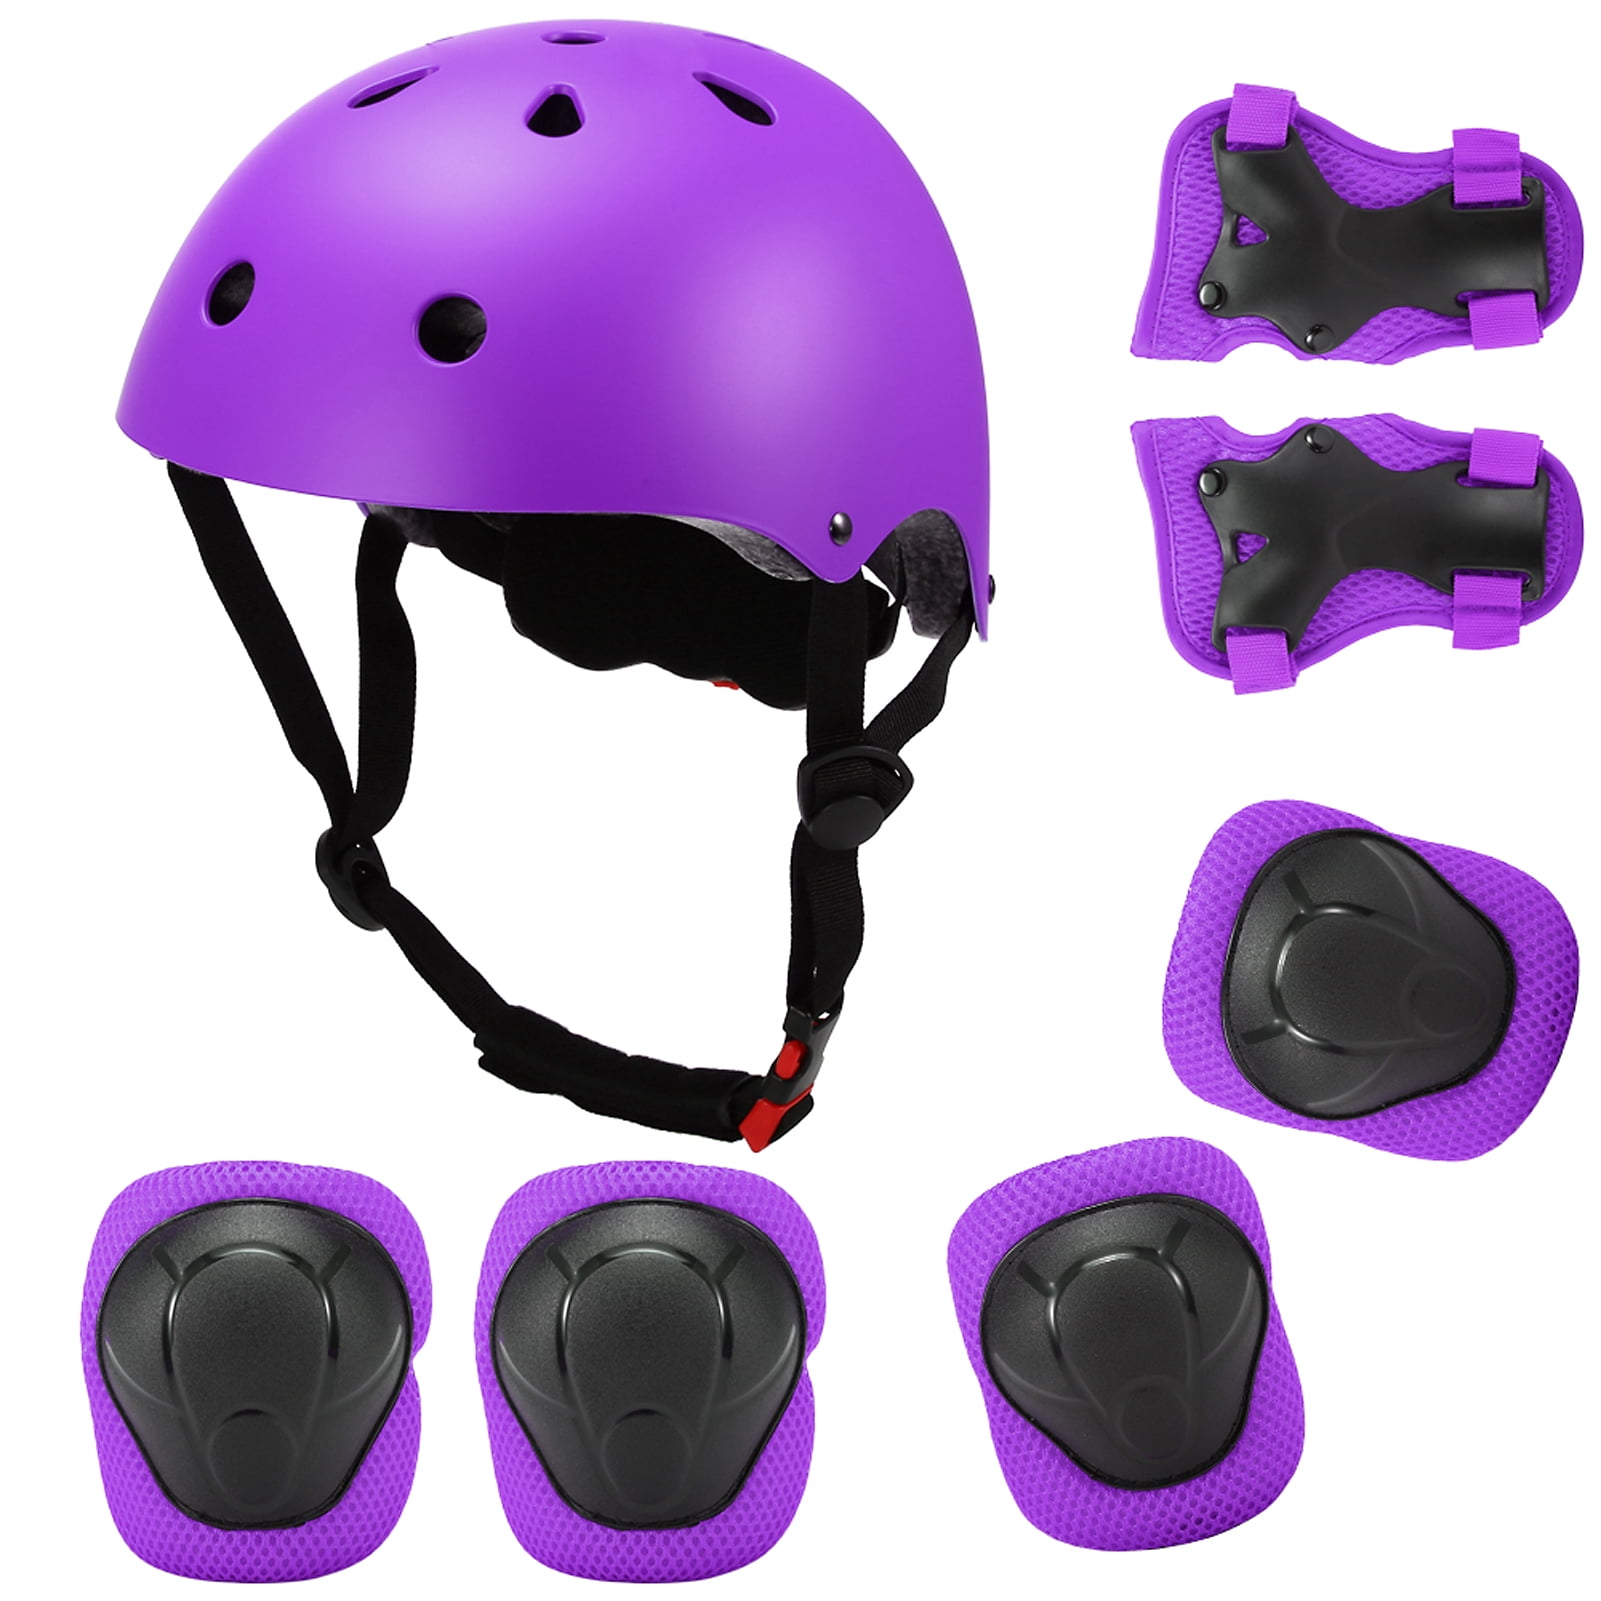 Kids 7 in 1 Helmet and Pads Set Adjustable Knee Elbow Pad Wrist Guard Skateboard 